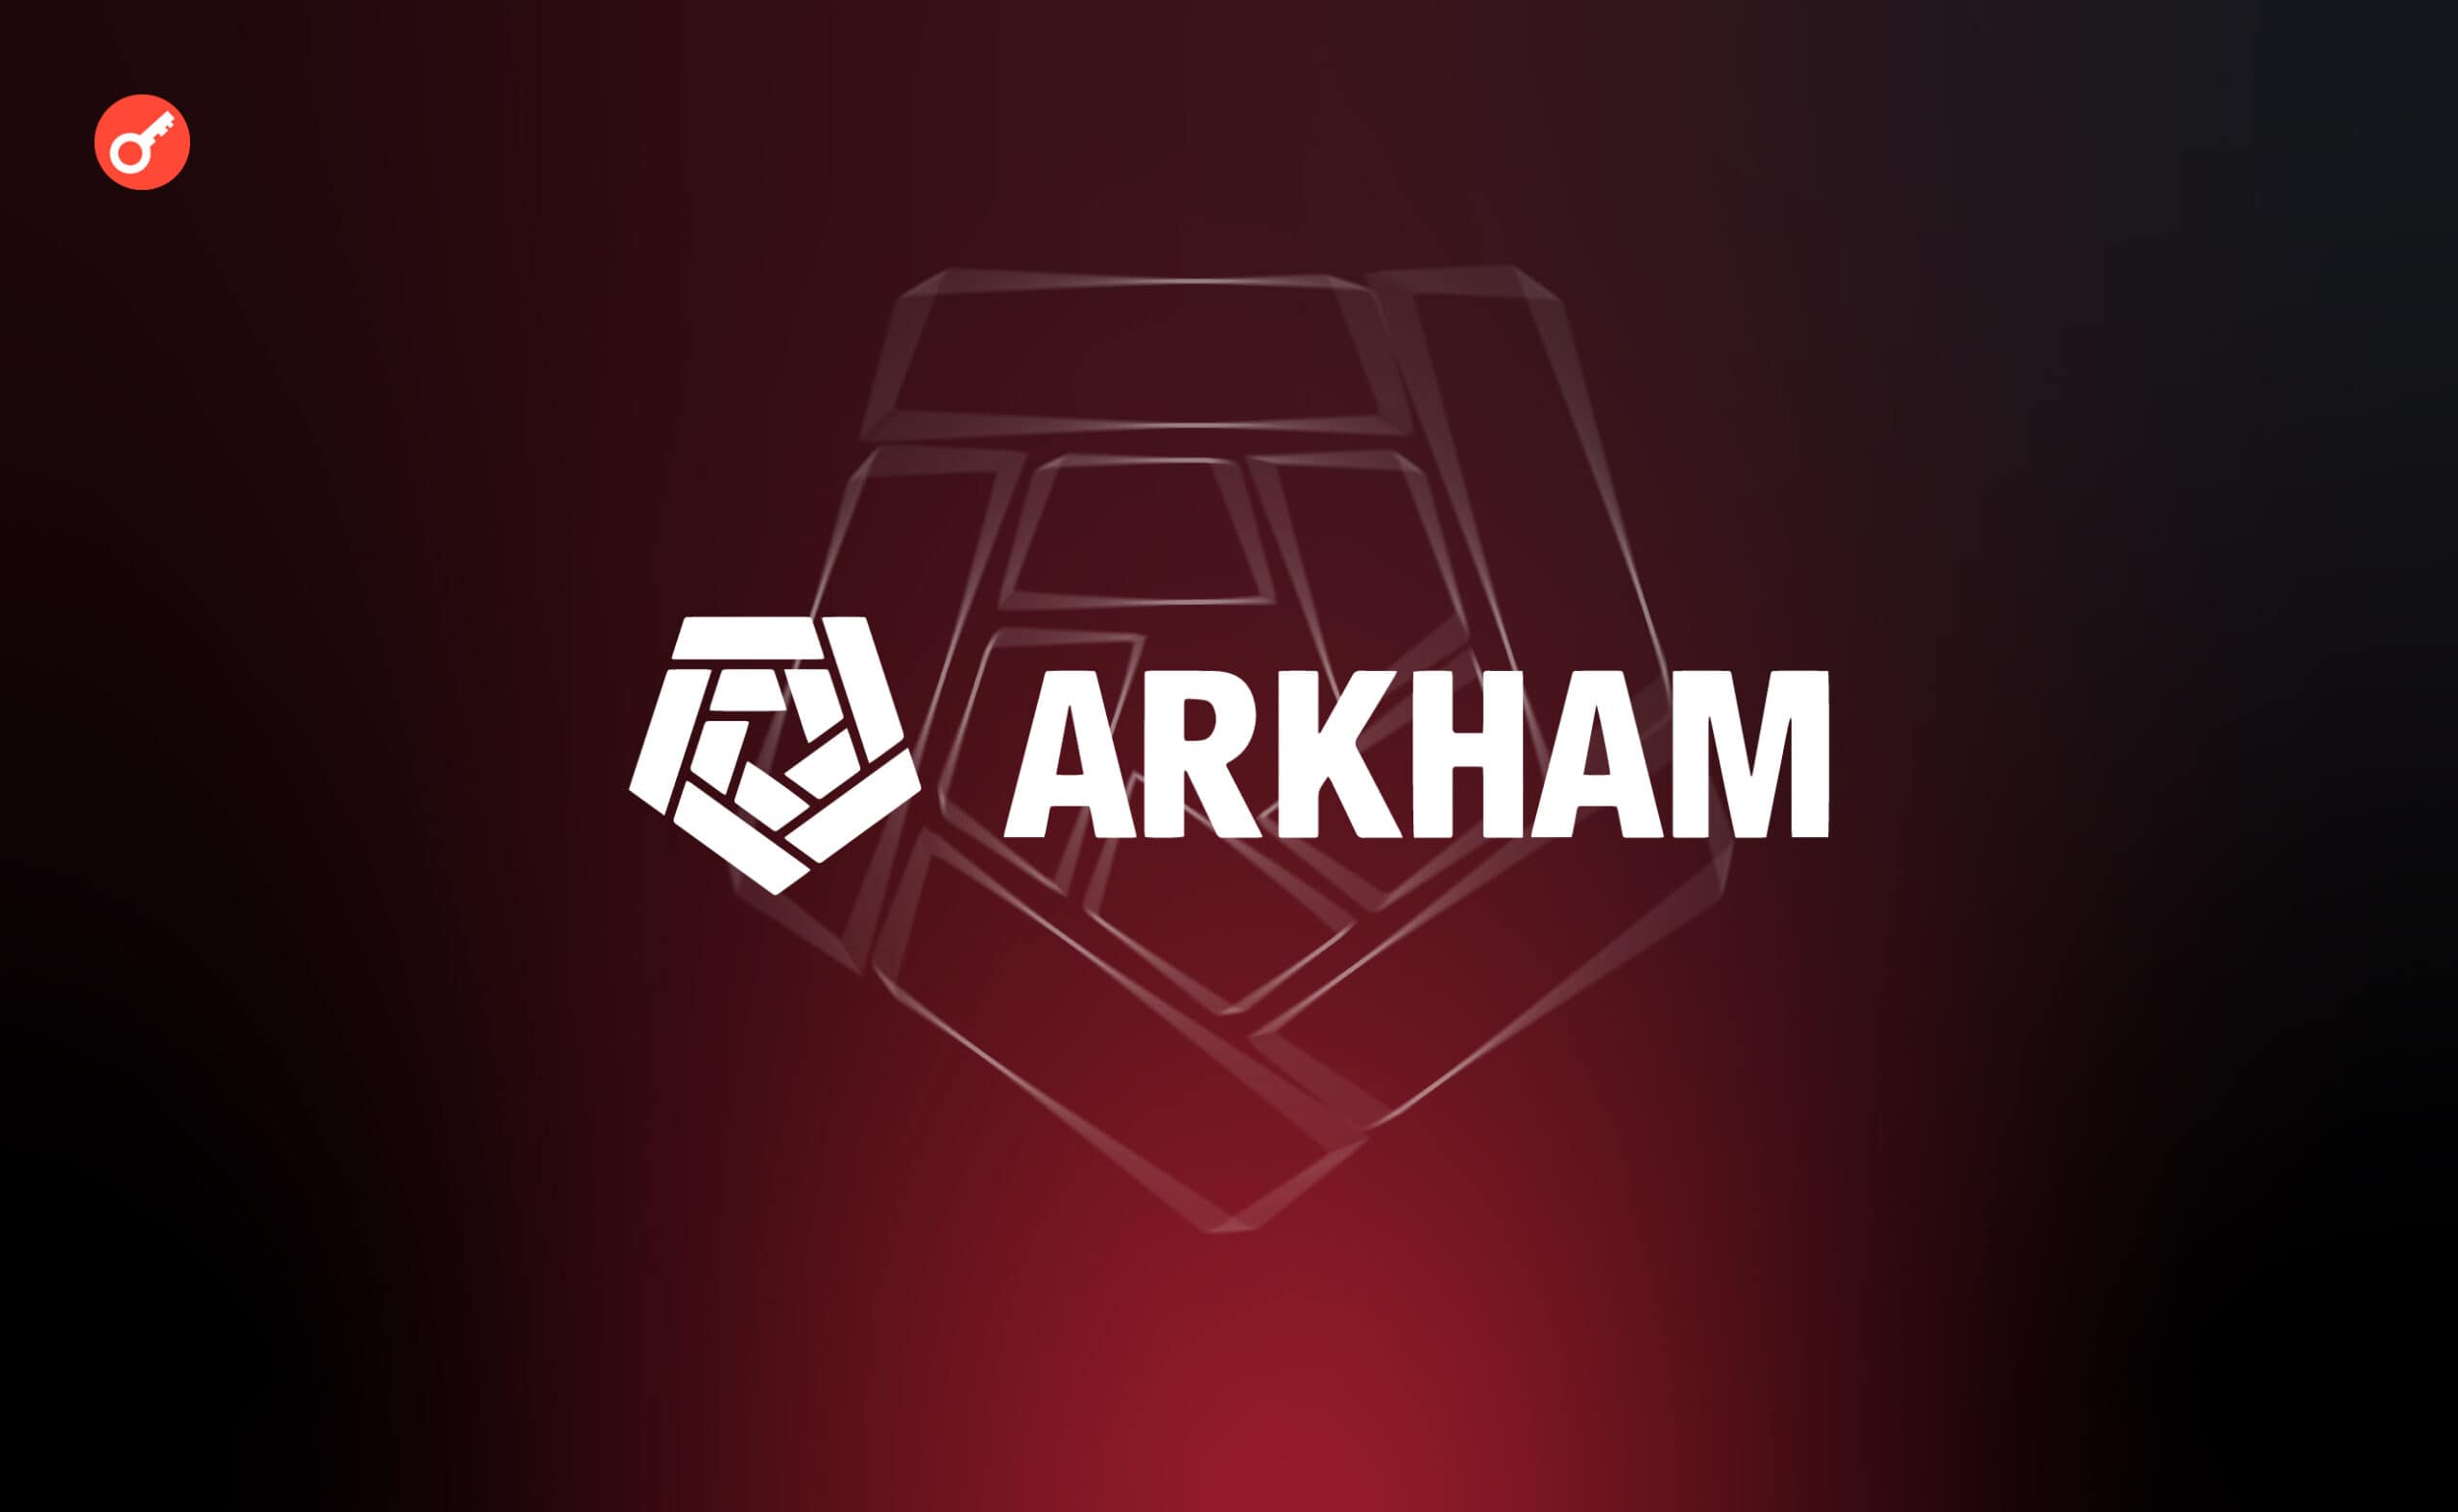 В Arkham запропонували нагороду в $150 000 за інформацію про автора DJT. Головний колаж новини.